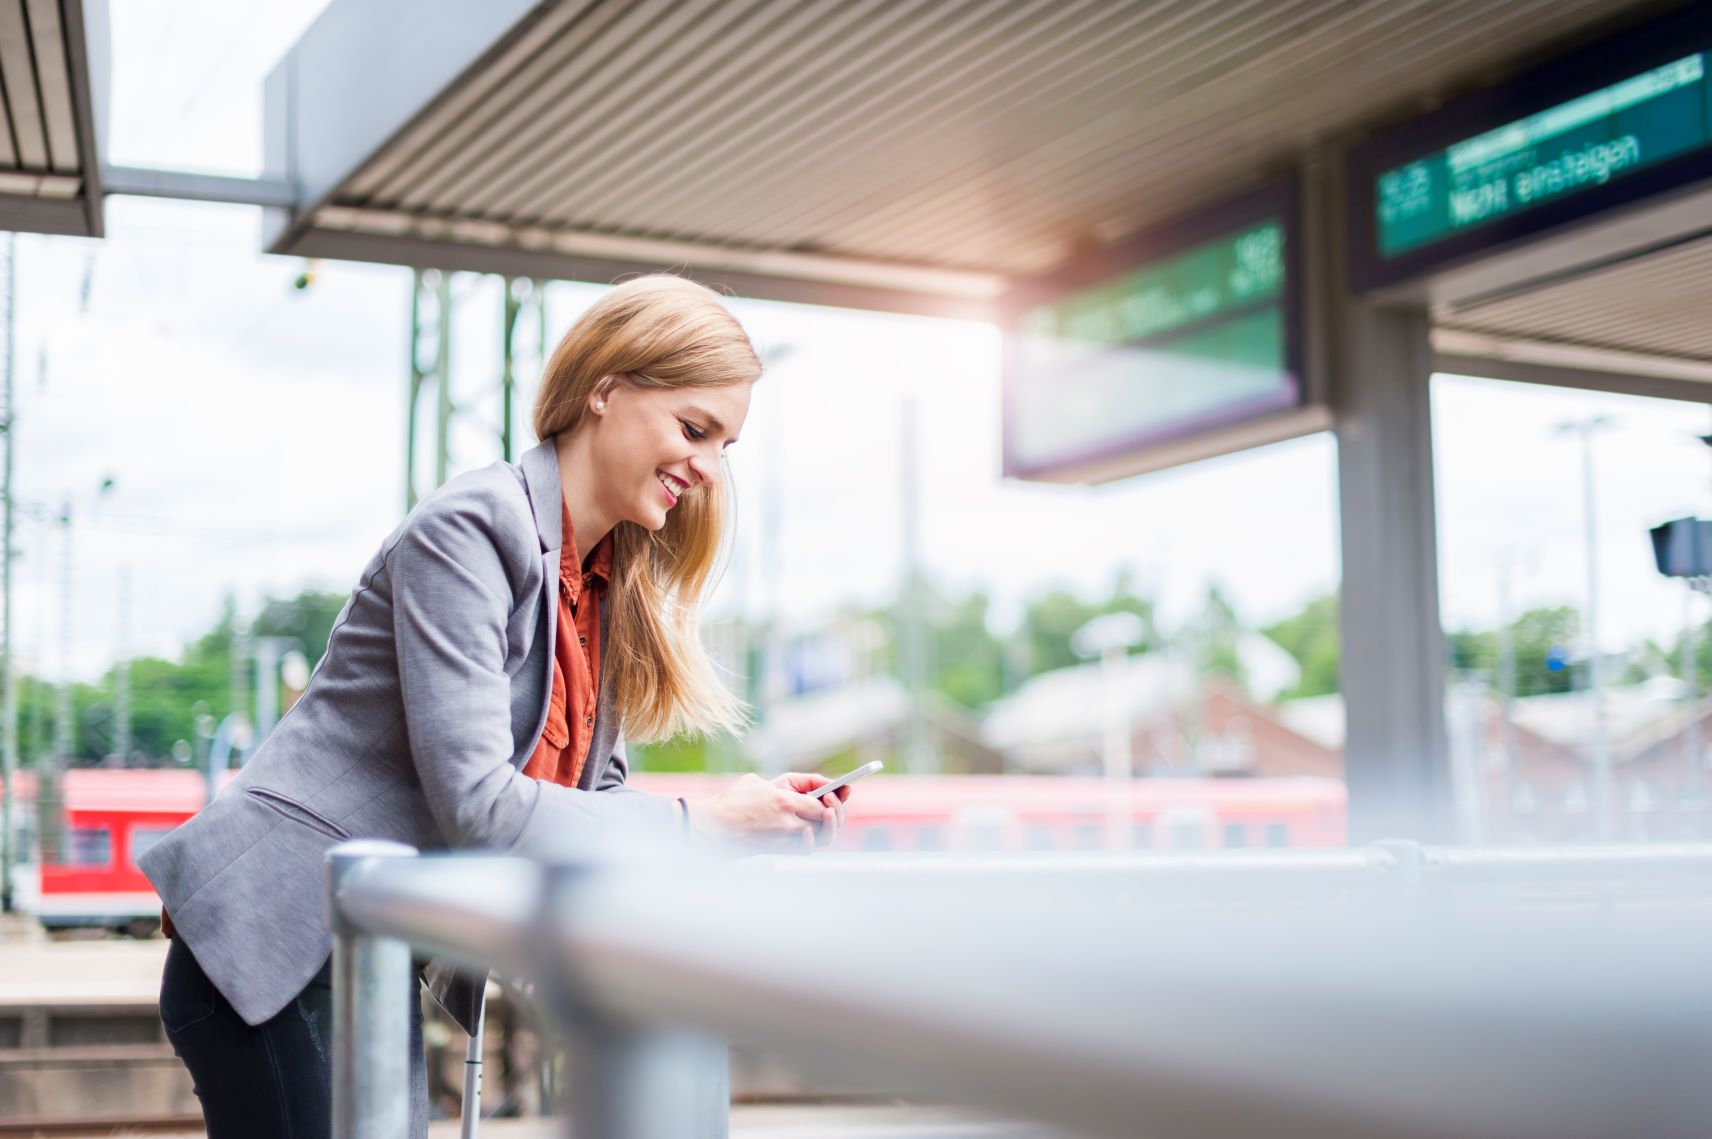 Lächelnde junge Frau am Bahnhof schaut auf ihr Smartphone